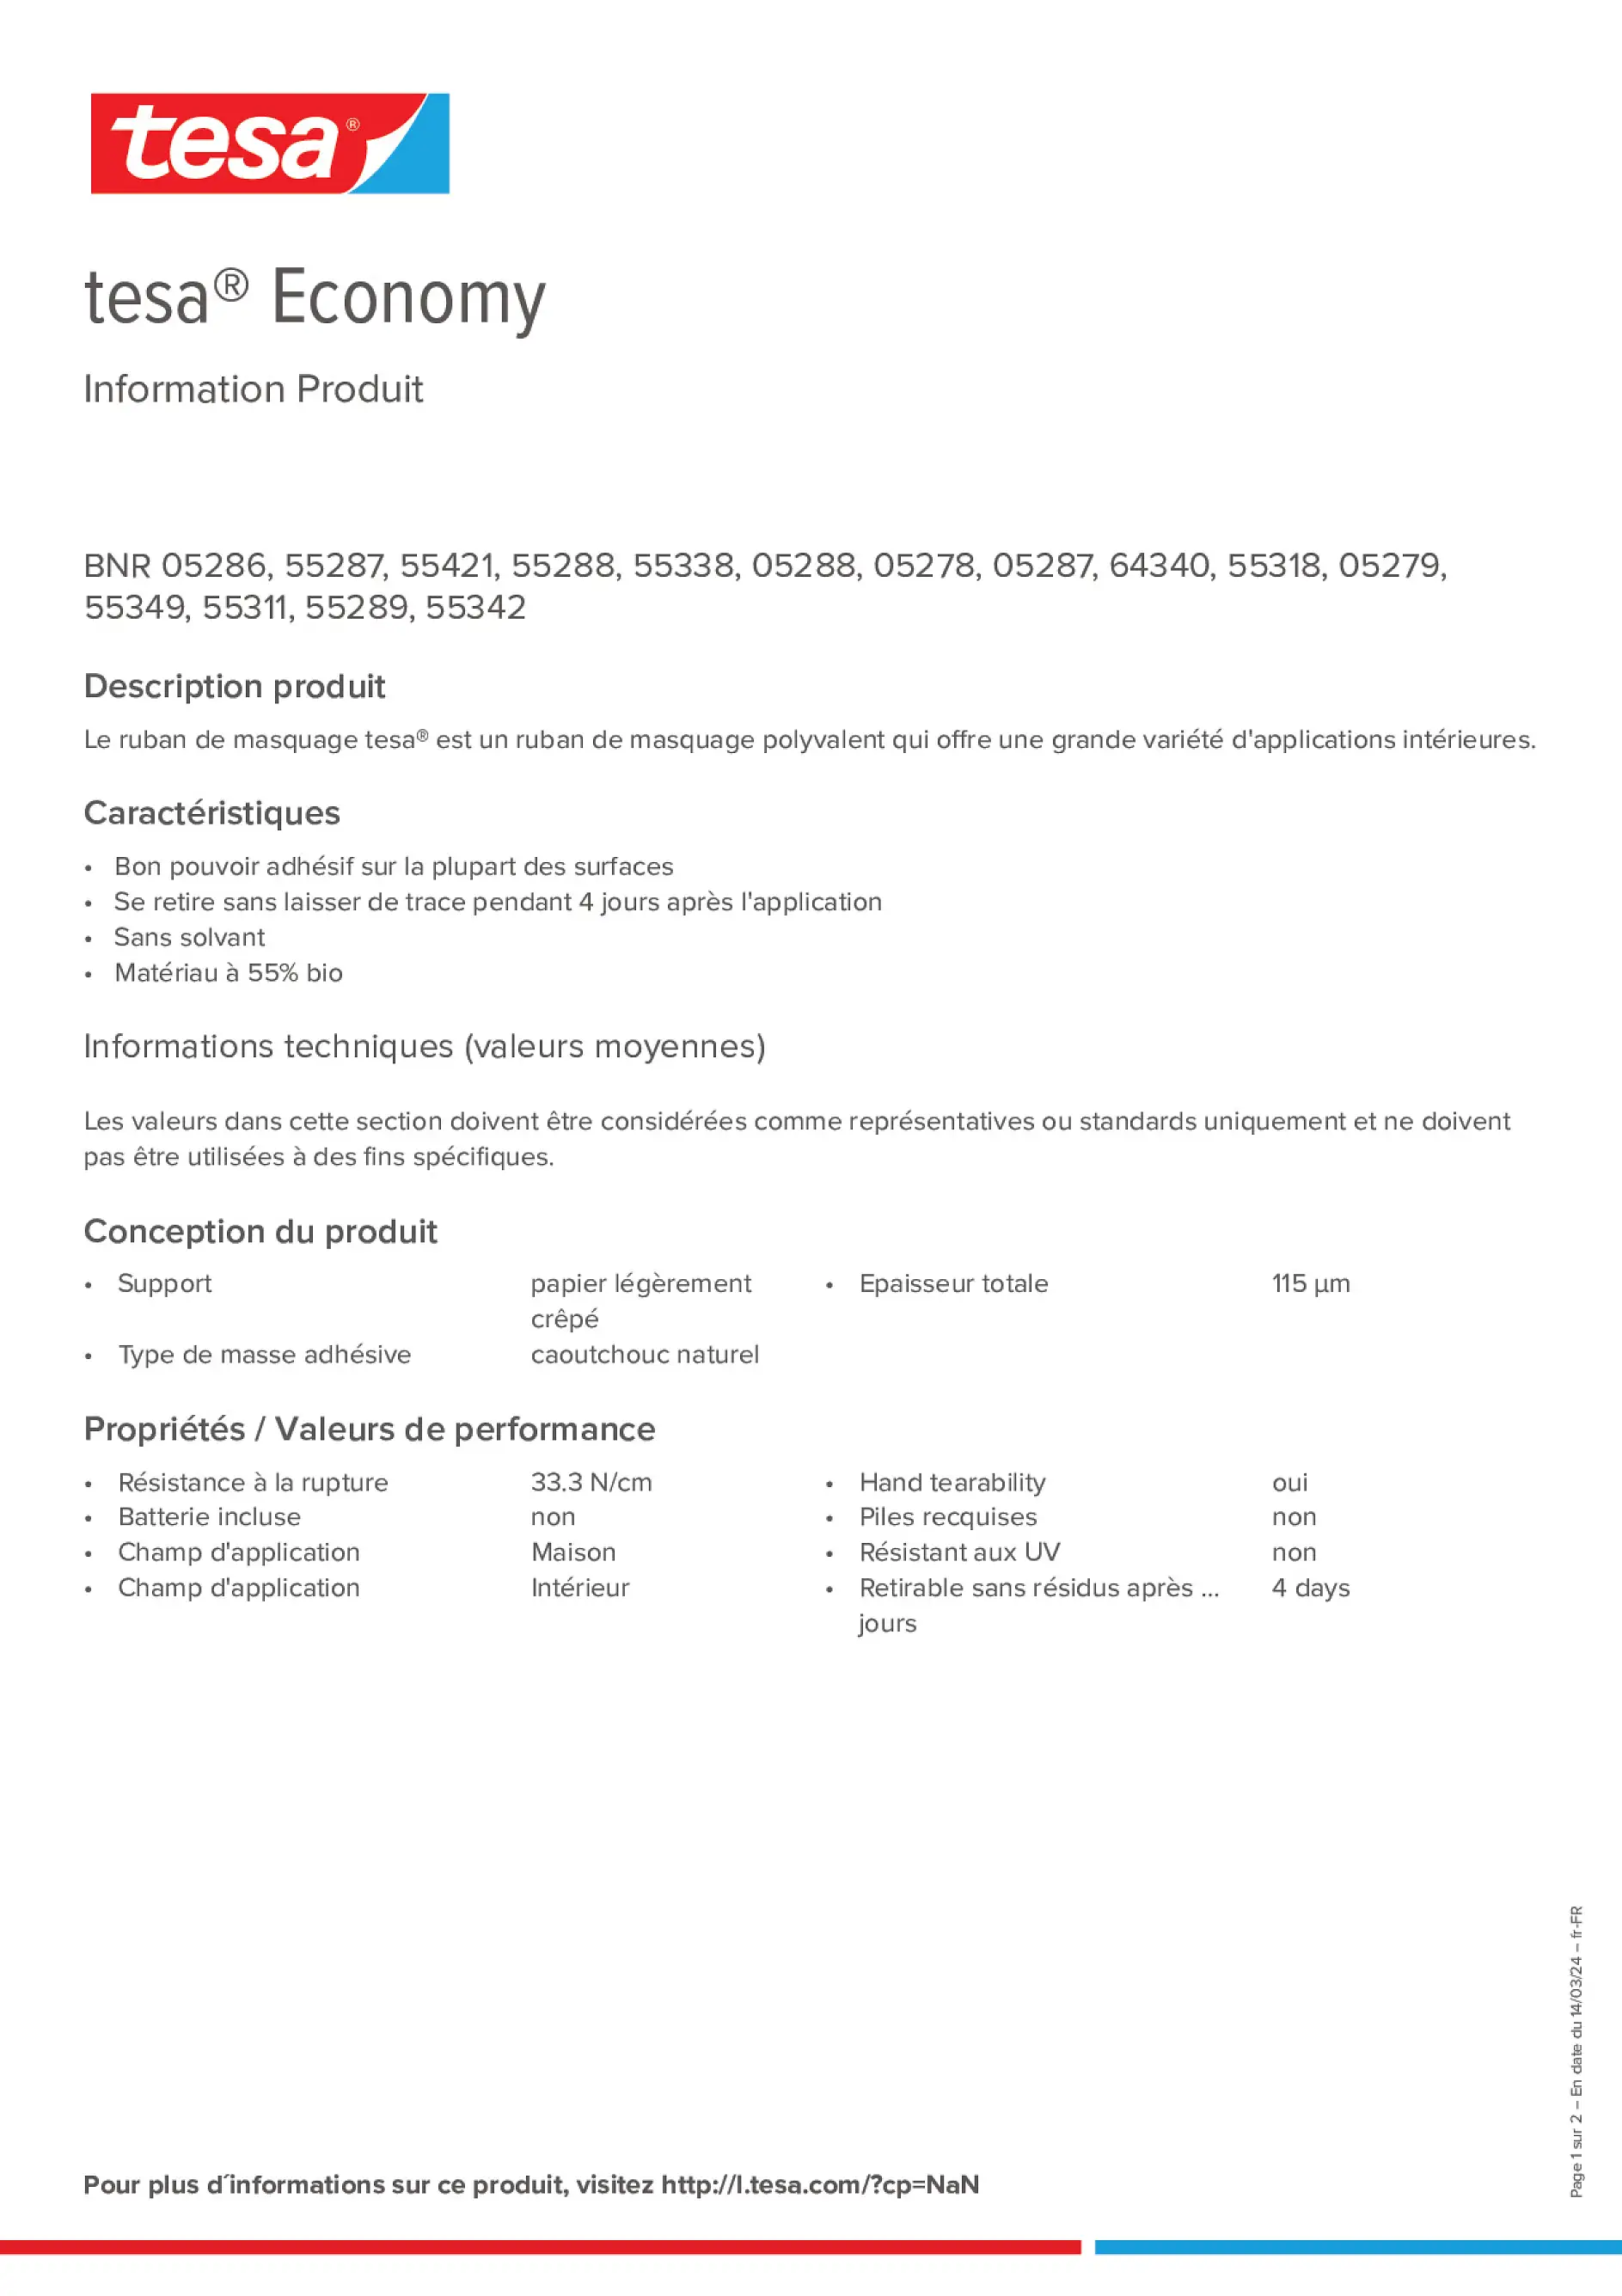 Product information_tesa® 55287_fr-FR